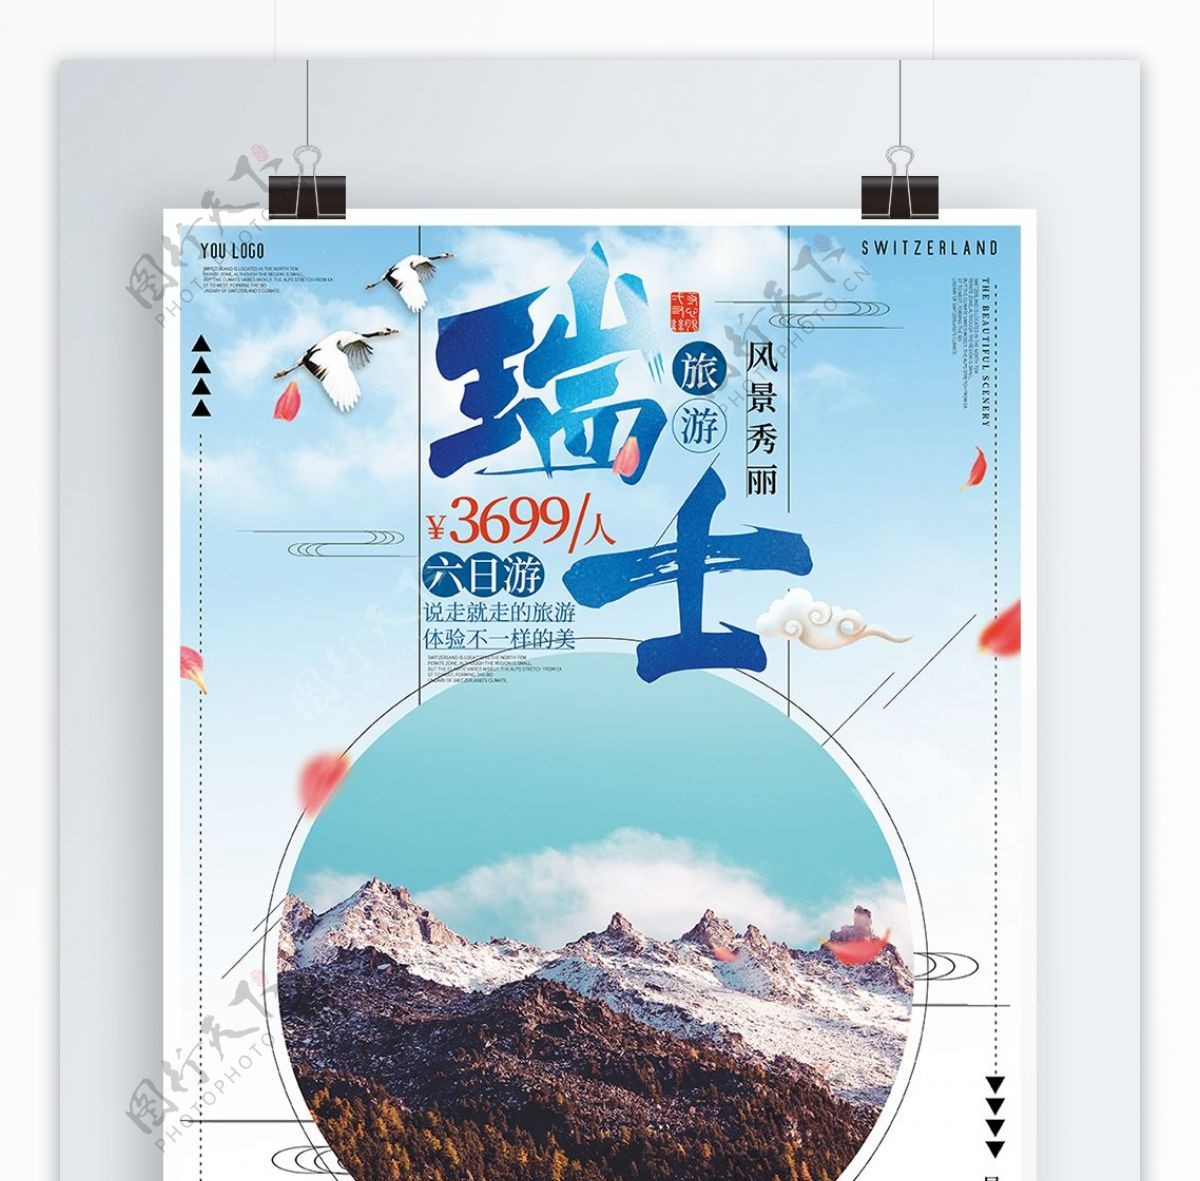 瑞士浅蓝色促销旅游海报